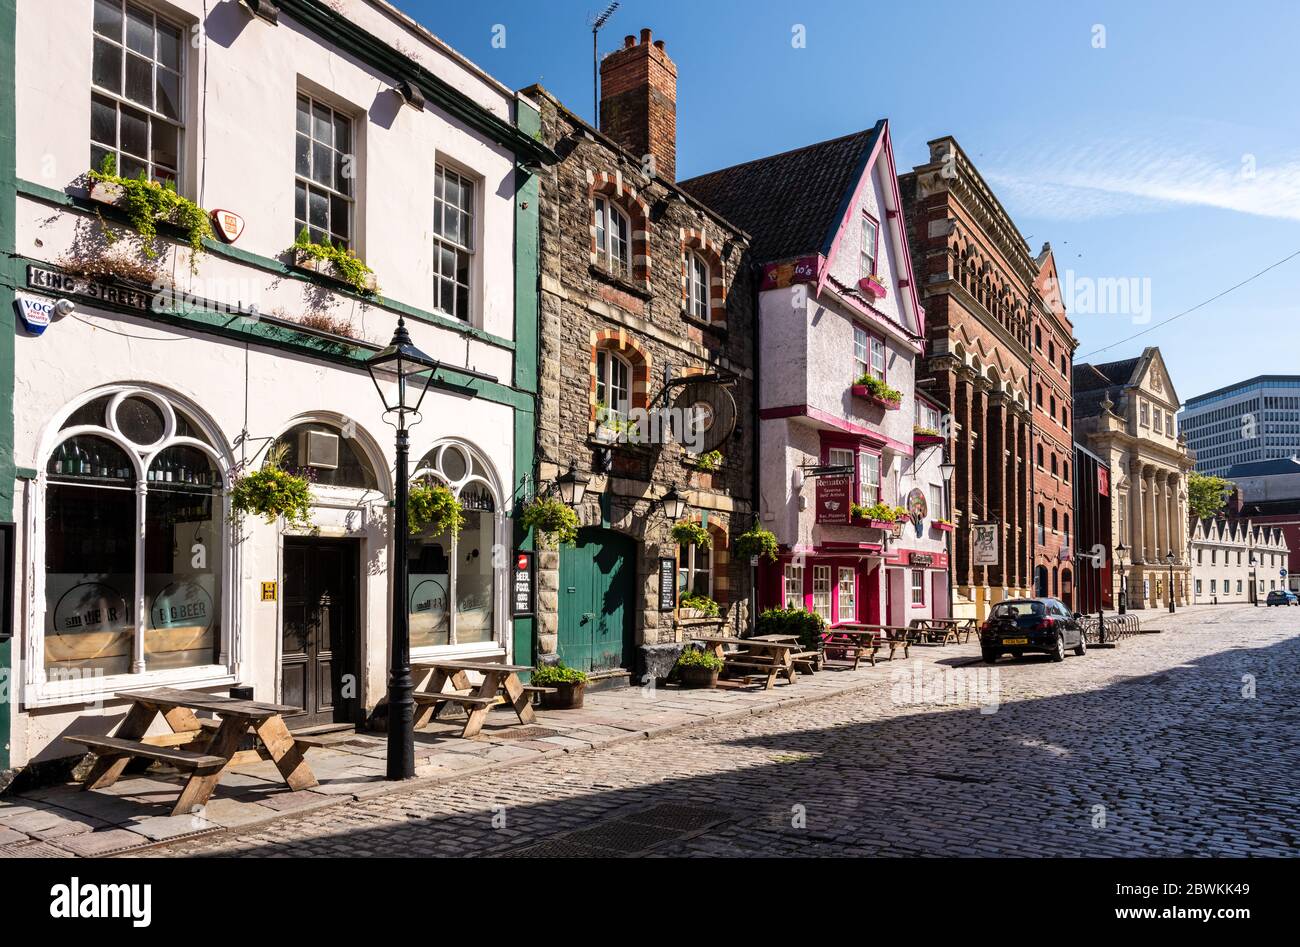 Bristol, England, UK - 25. Mai 2020: Morgensonne scheint in Pubs und Restaurants, die mit hängenden Körben und Fensterboxen an Bristol's historischem c Stockfoto